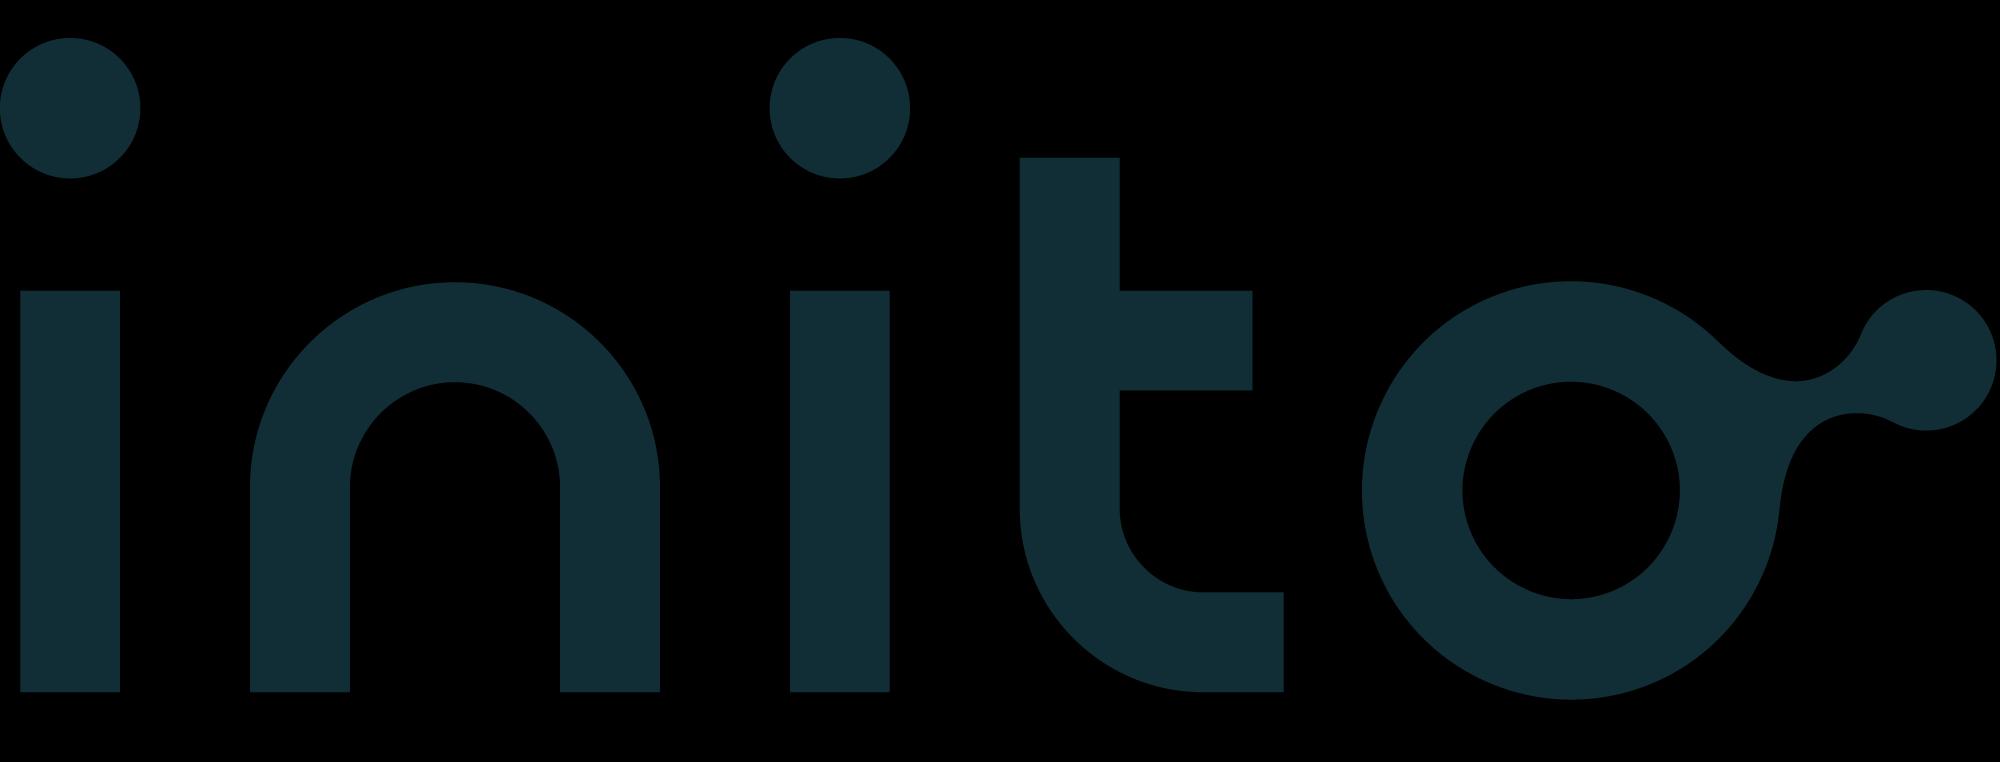 Inito_logo